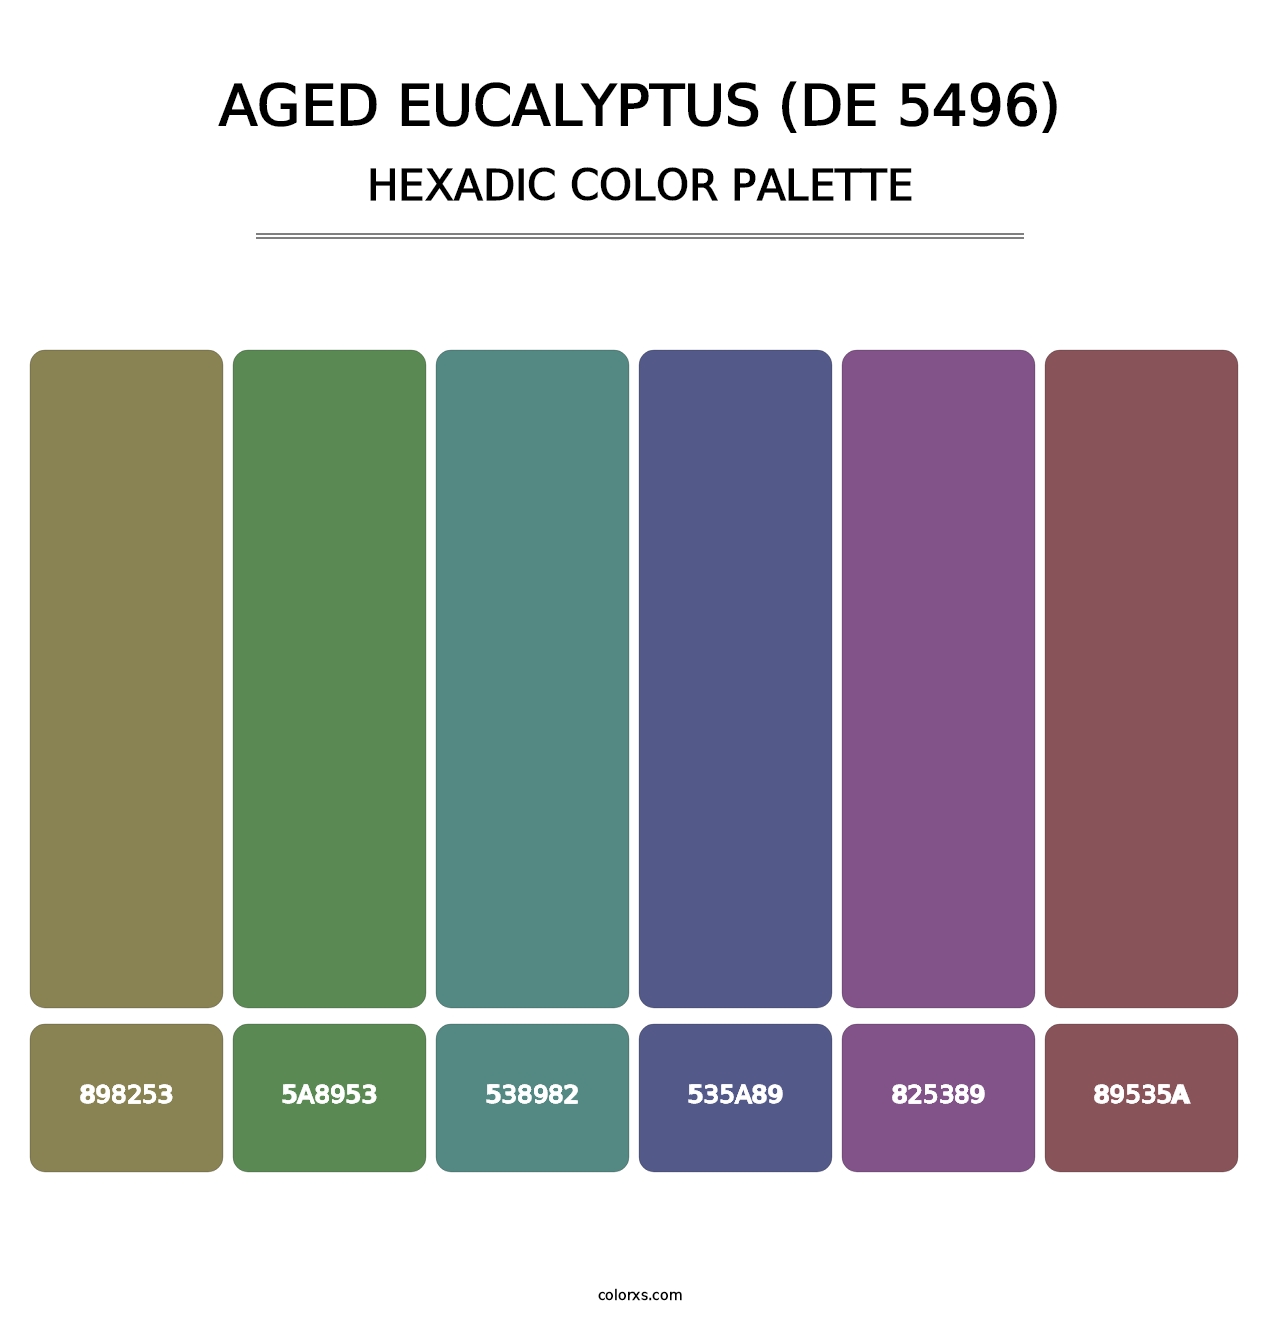 Aged Eucalyptus (DE 5496) - Hexadic Color Palette